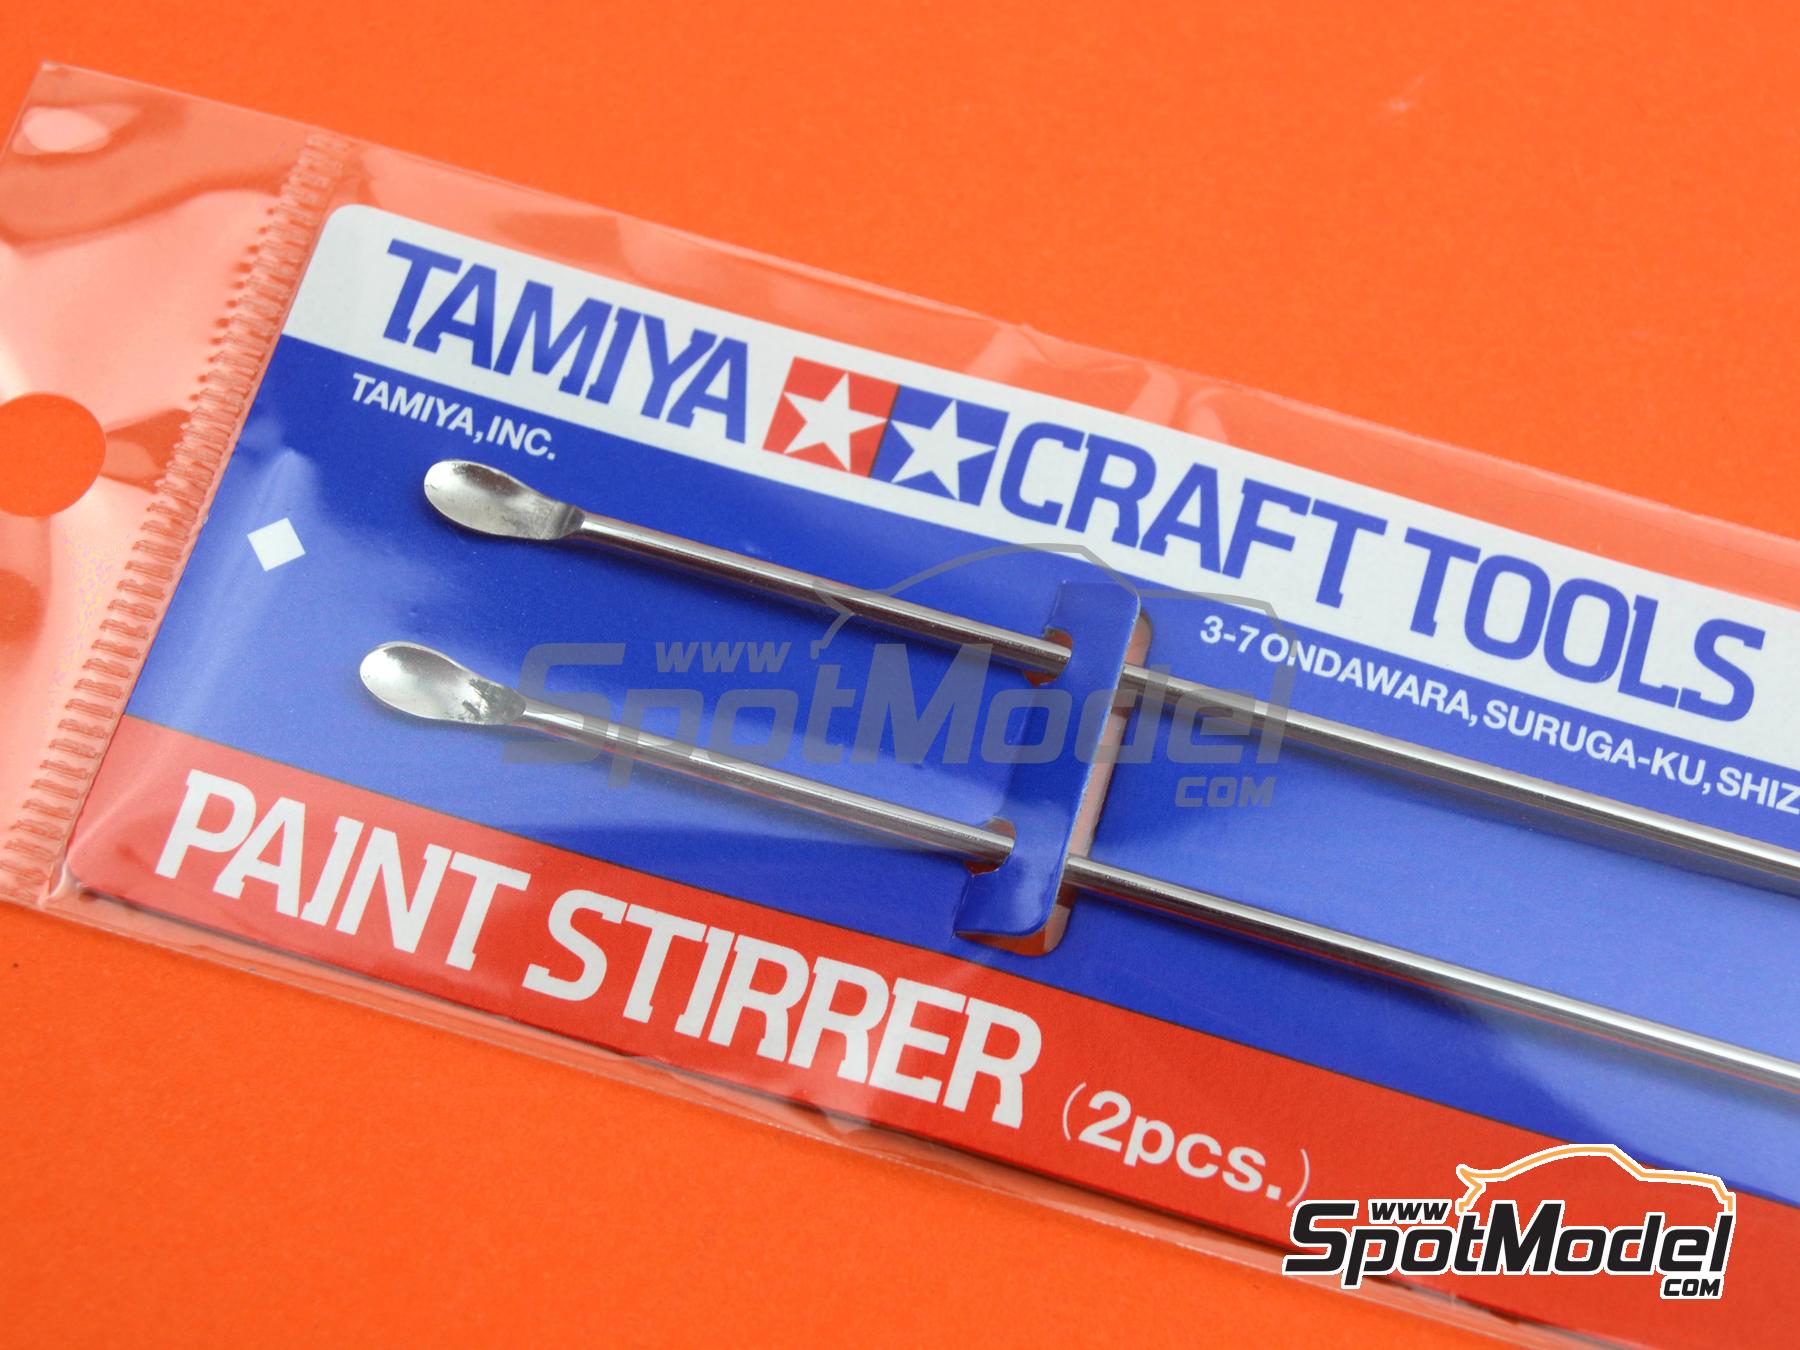 Tamiya 74017 Paint Stirrer (2)